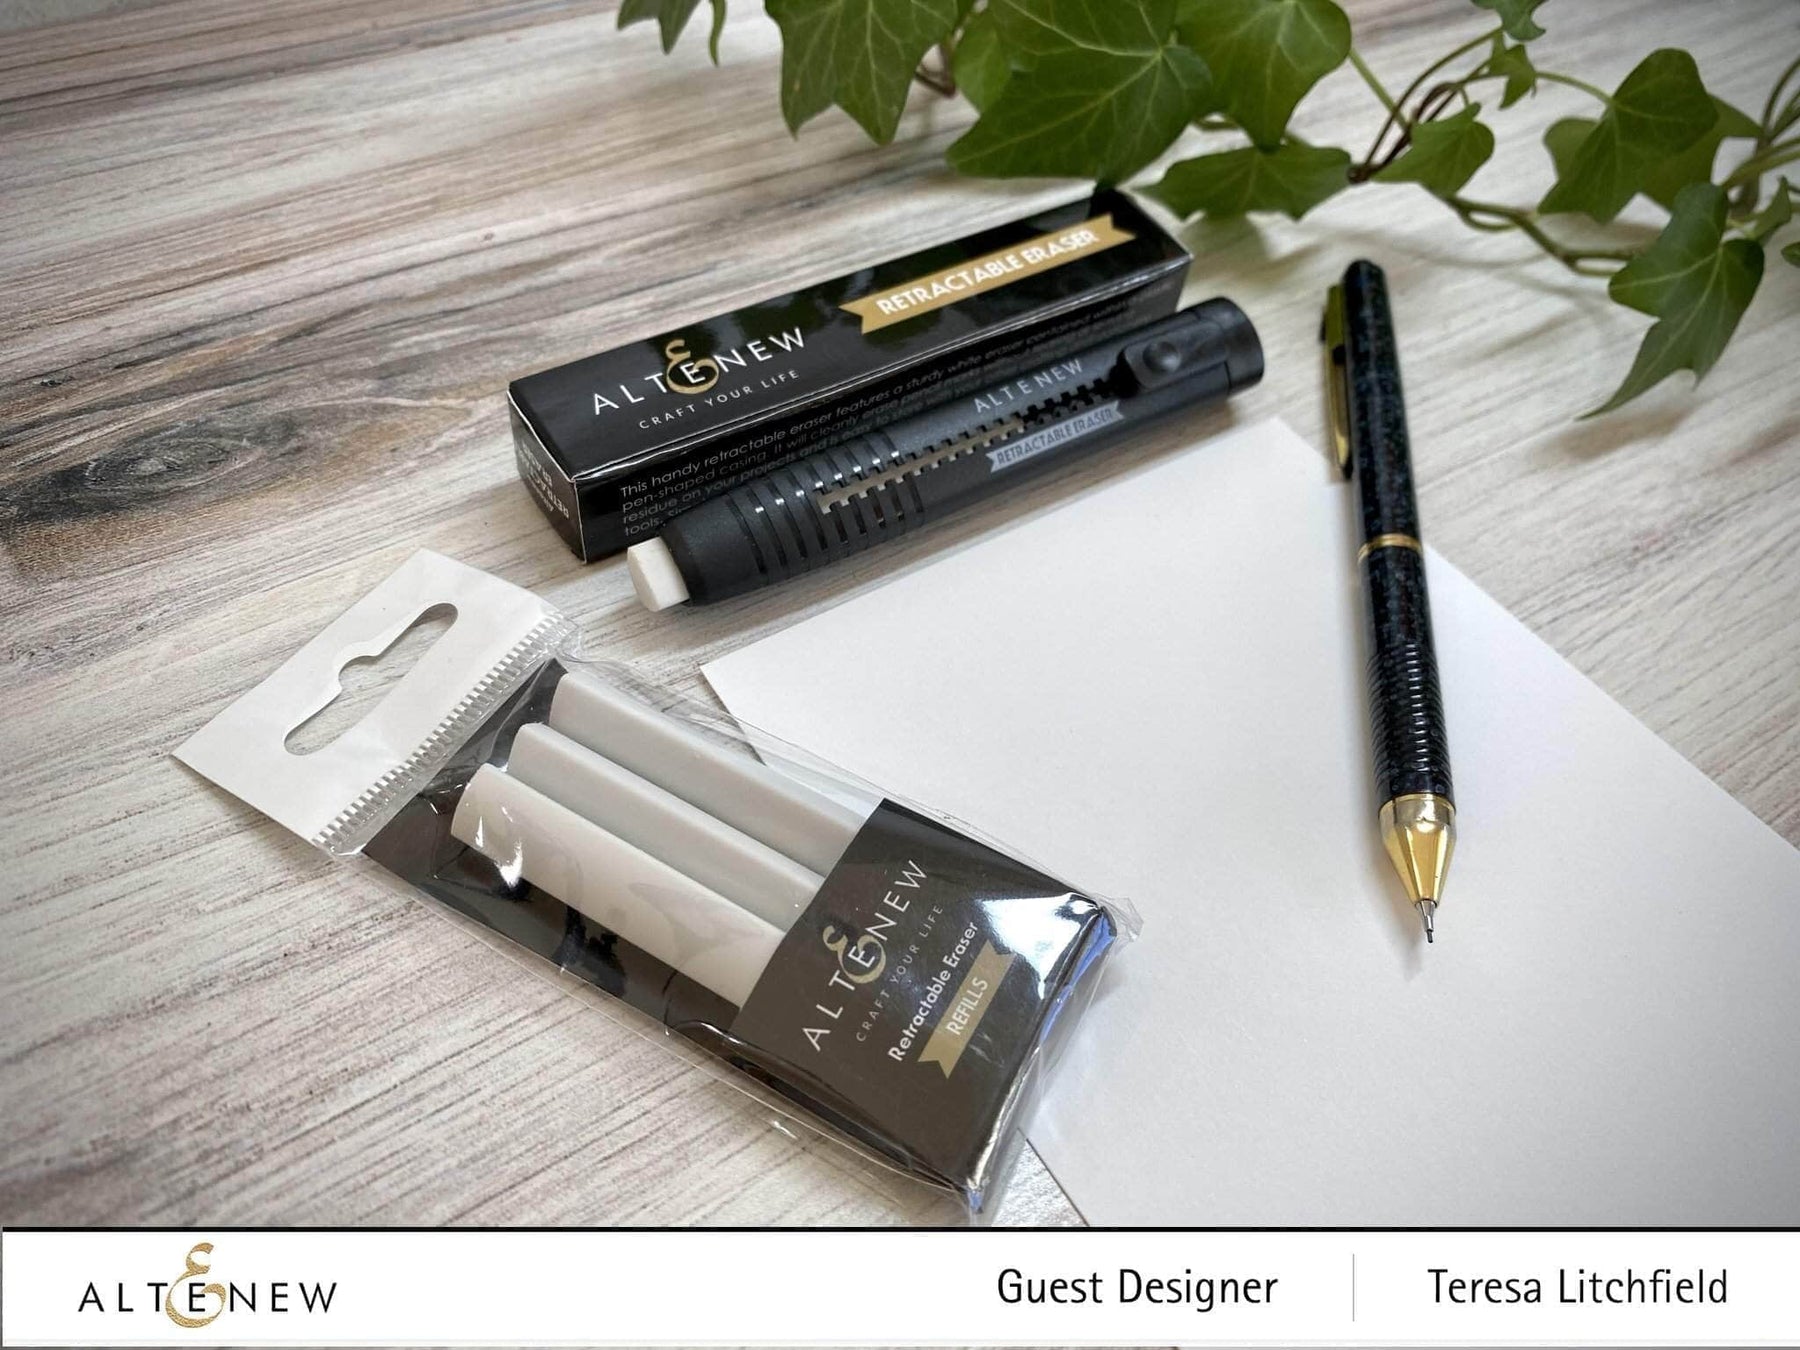  Derwent Retractable Eraser : Office Products